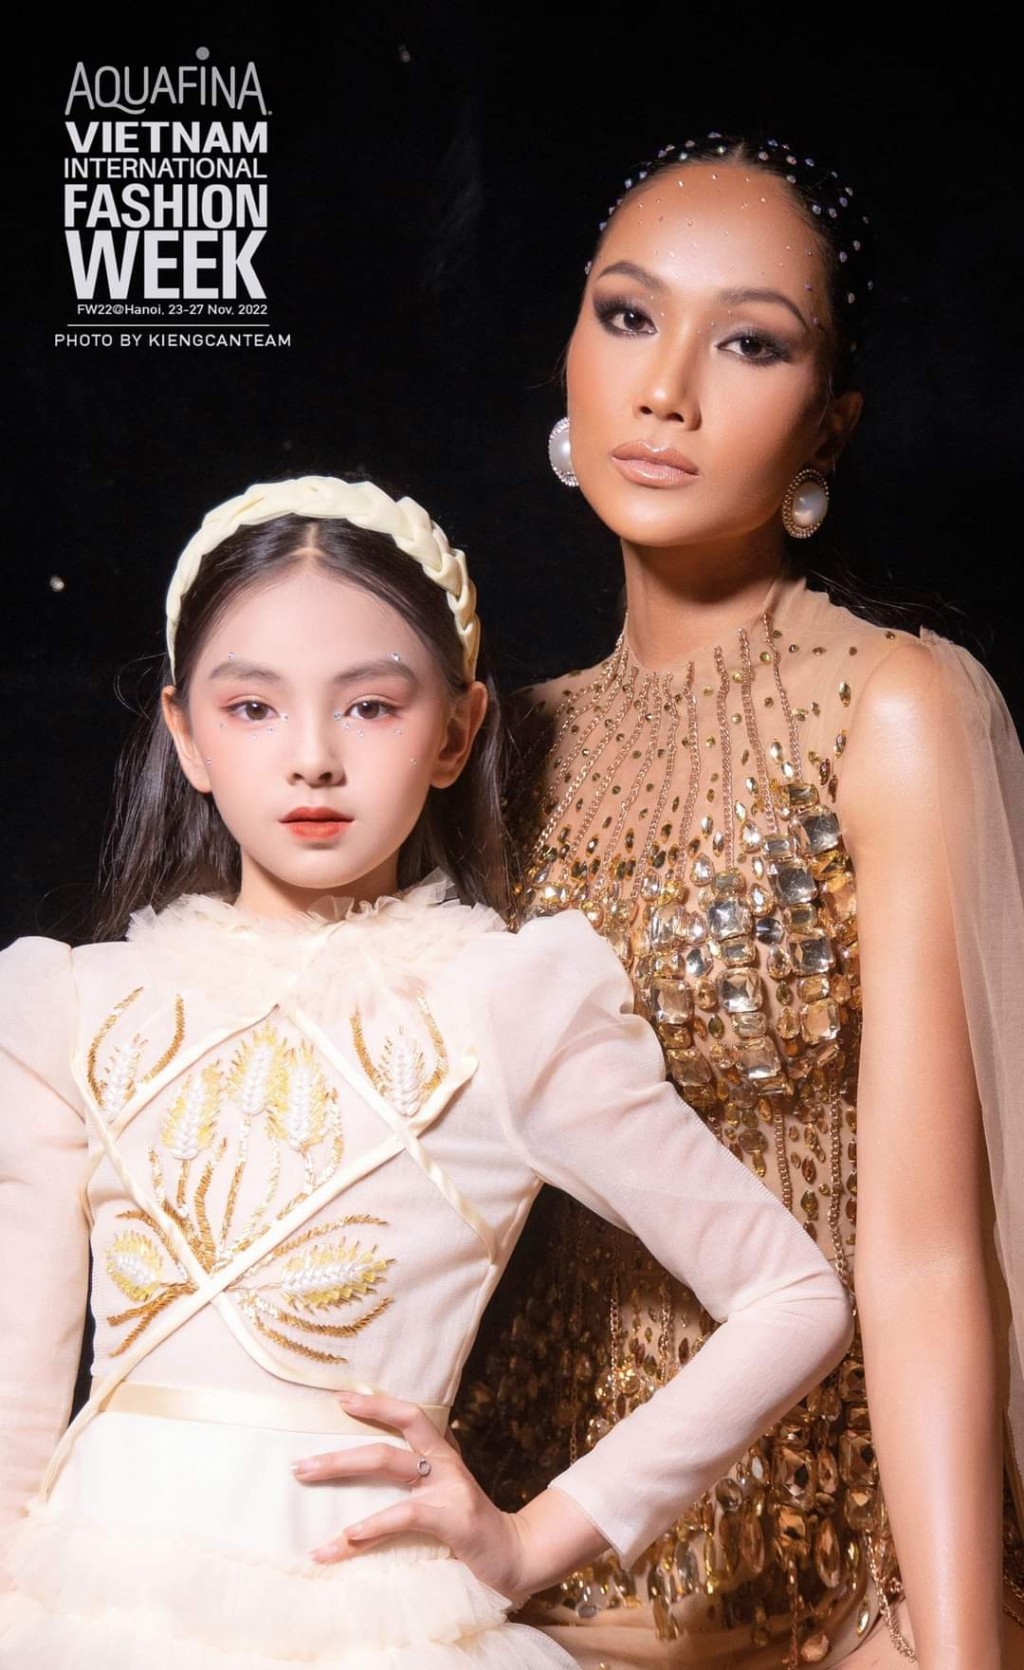 Chíp Cát Tường đọ sắc cùng hoa hậu H’Hen Niê tại Aquafina Vietnam International Fashion Week 2022